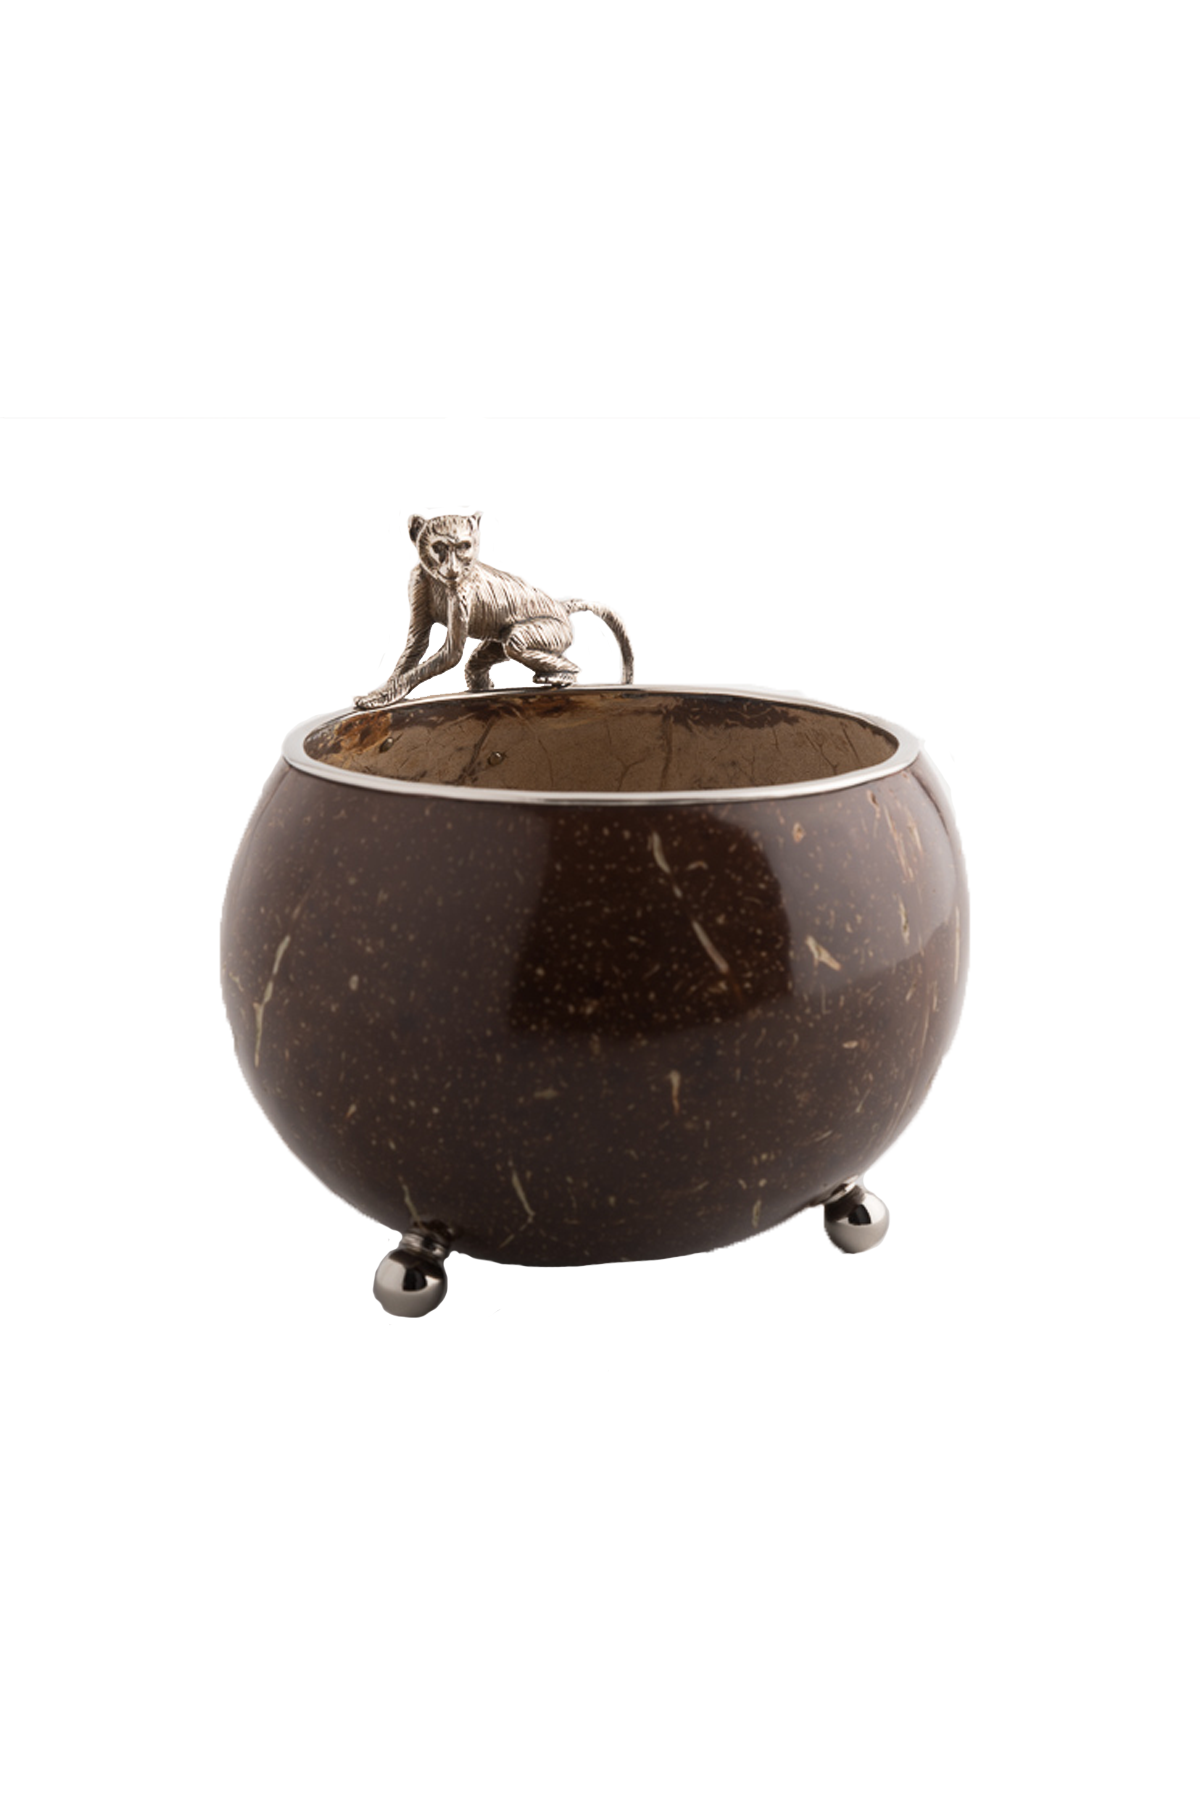 Madagascar Bowl – Monkey